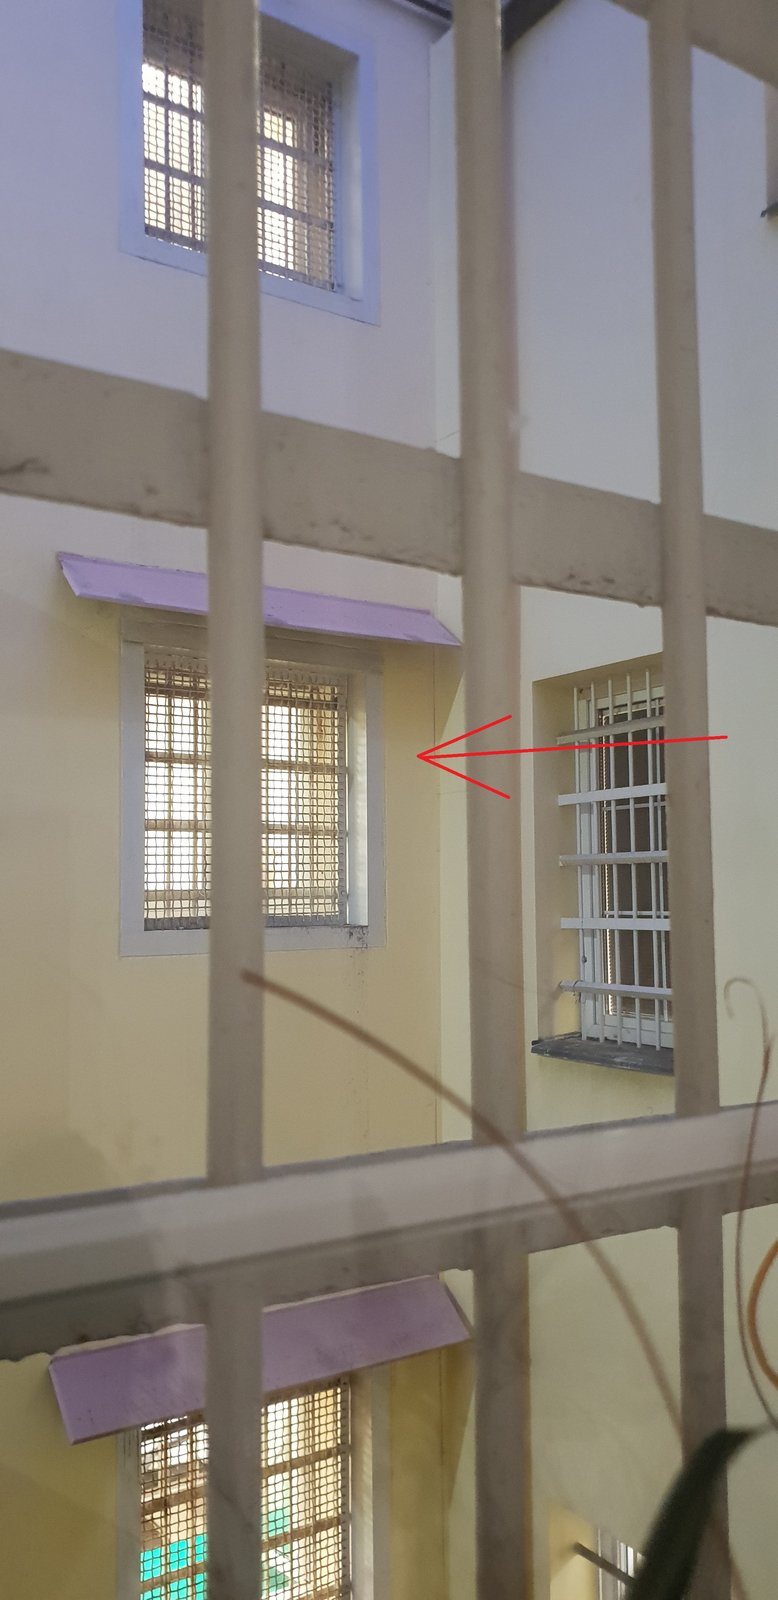 Vazební věznice v Teplicích, kde si David Rath odpykával trest.